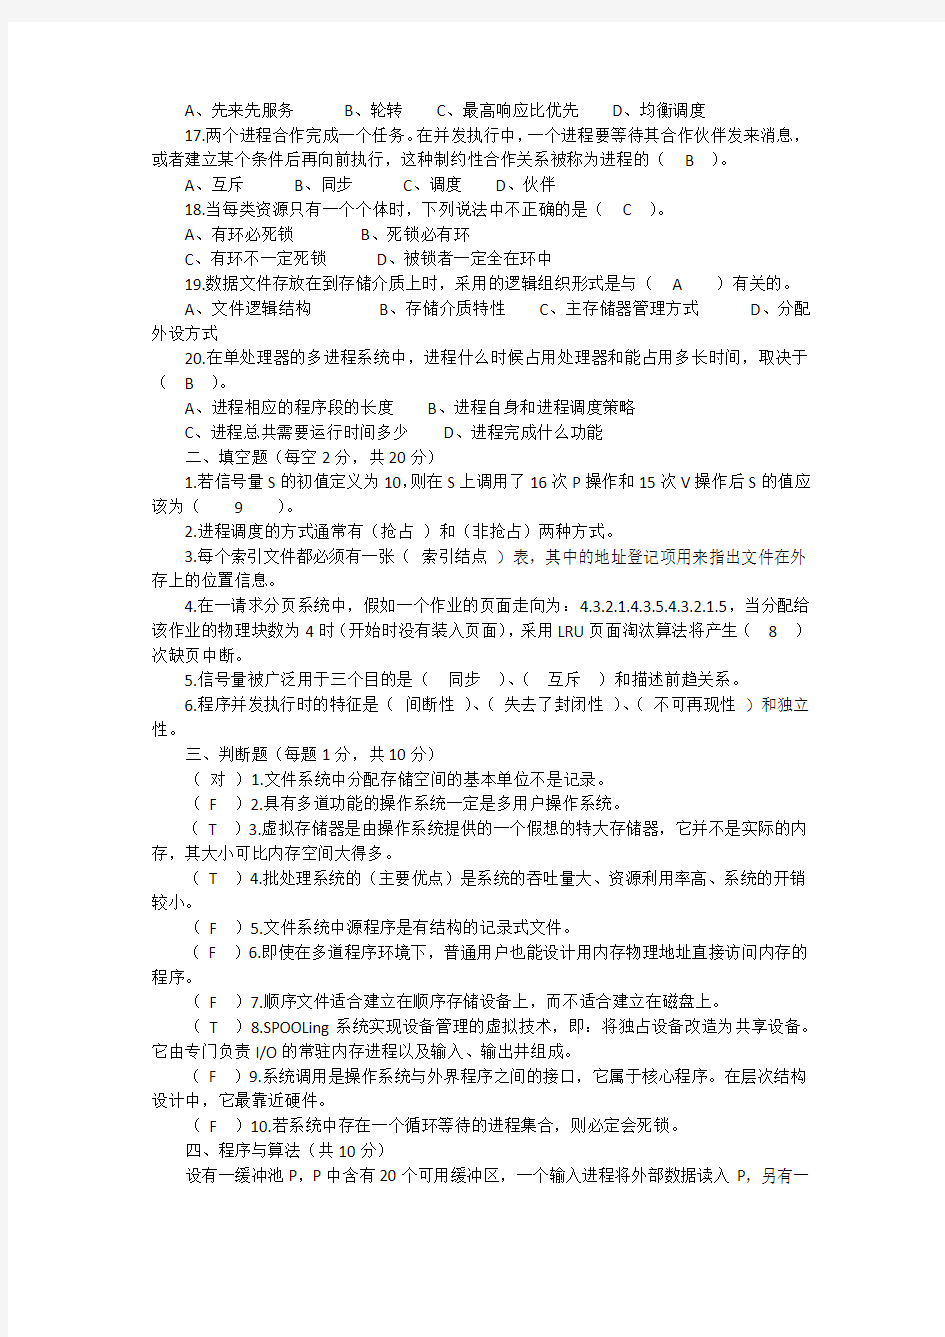 武汉大学计算机操作系统考试试卷